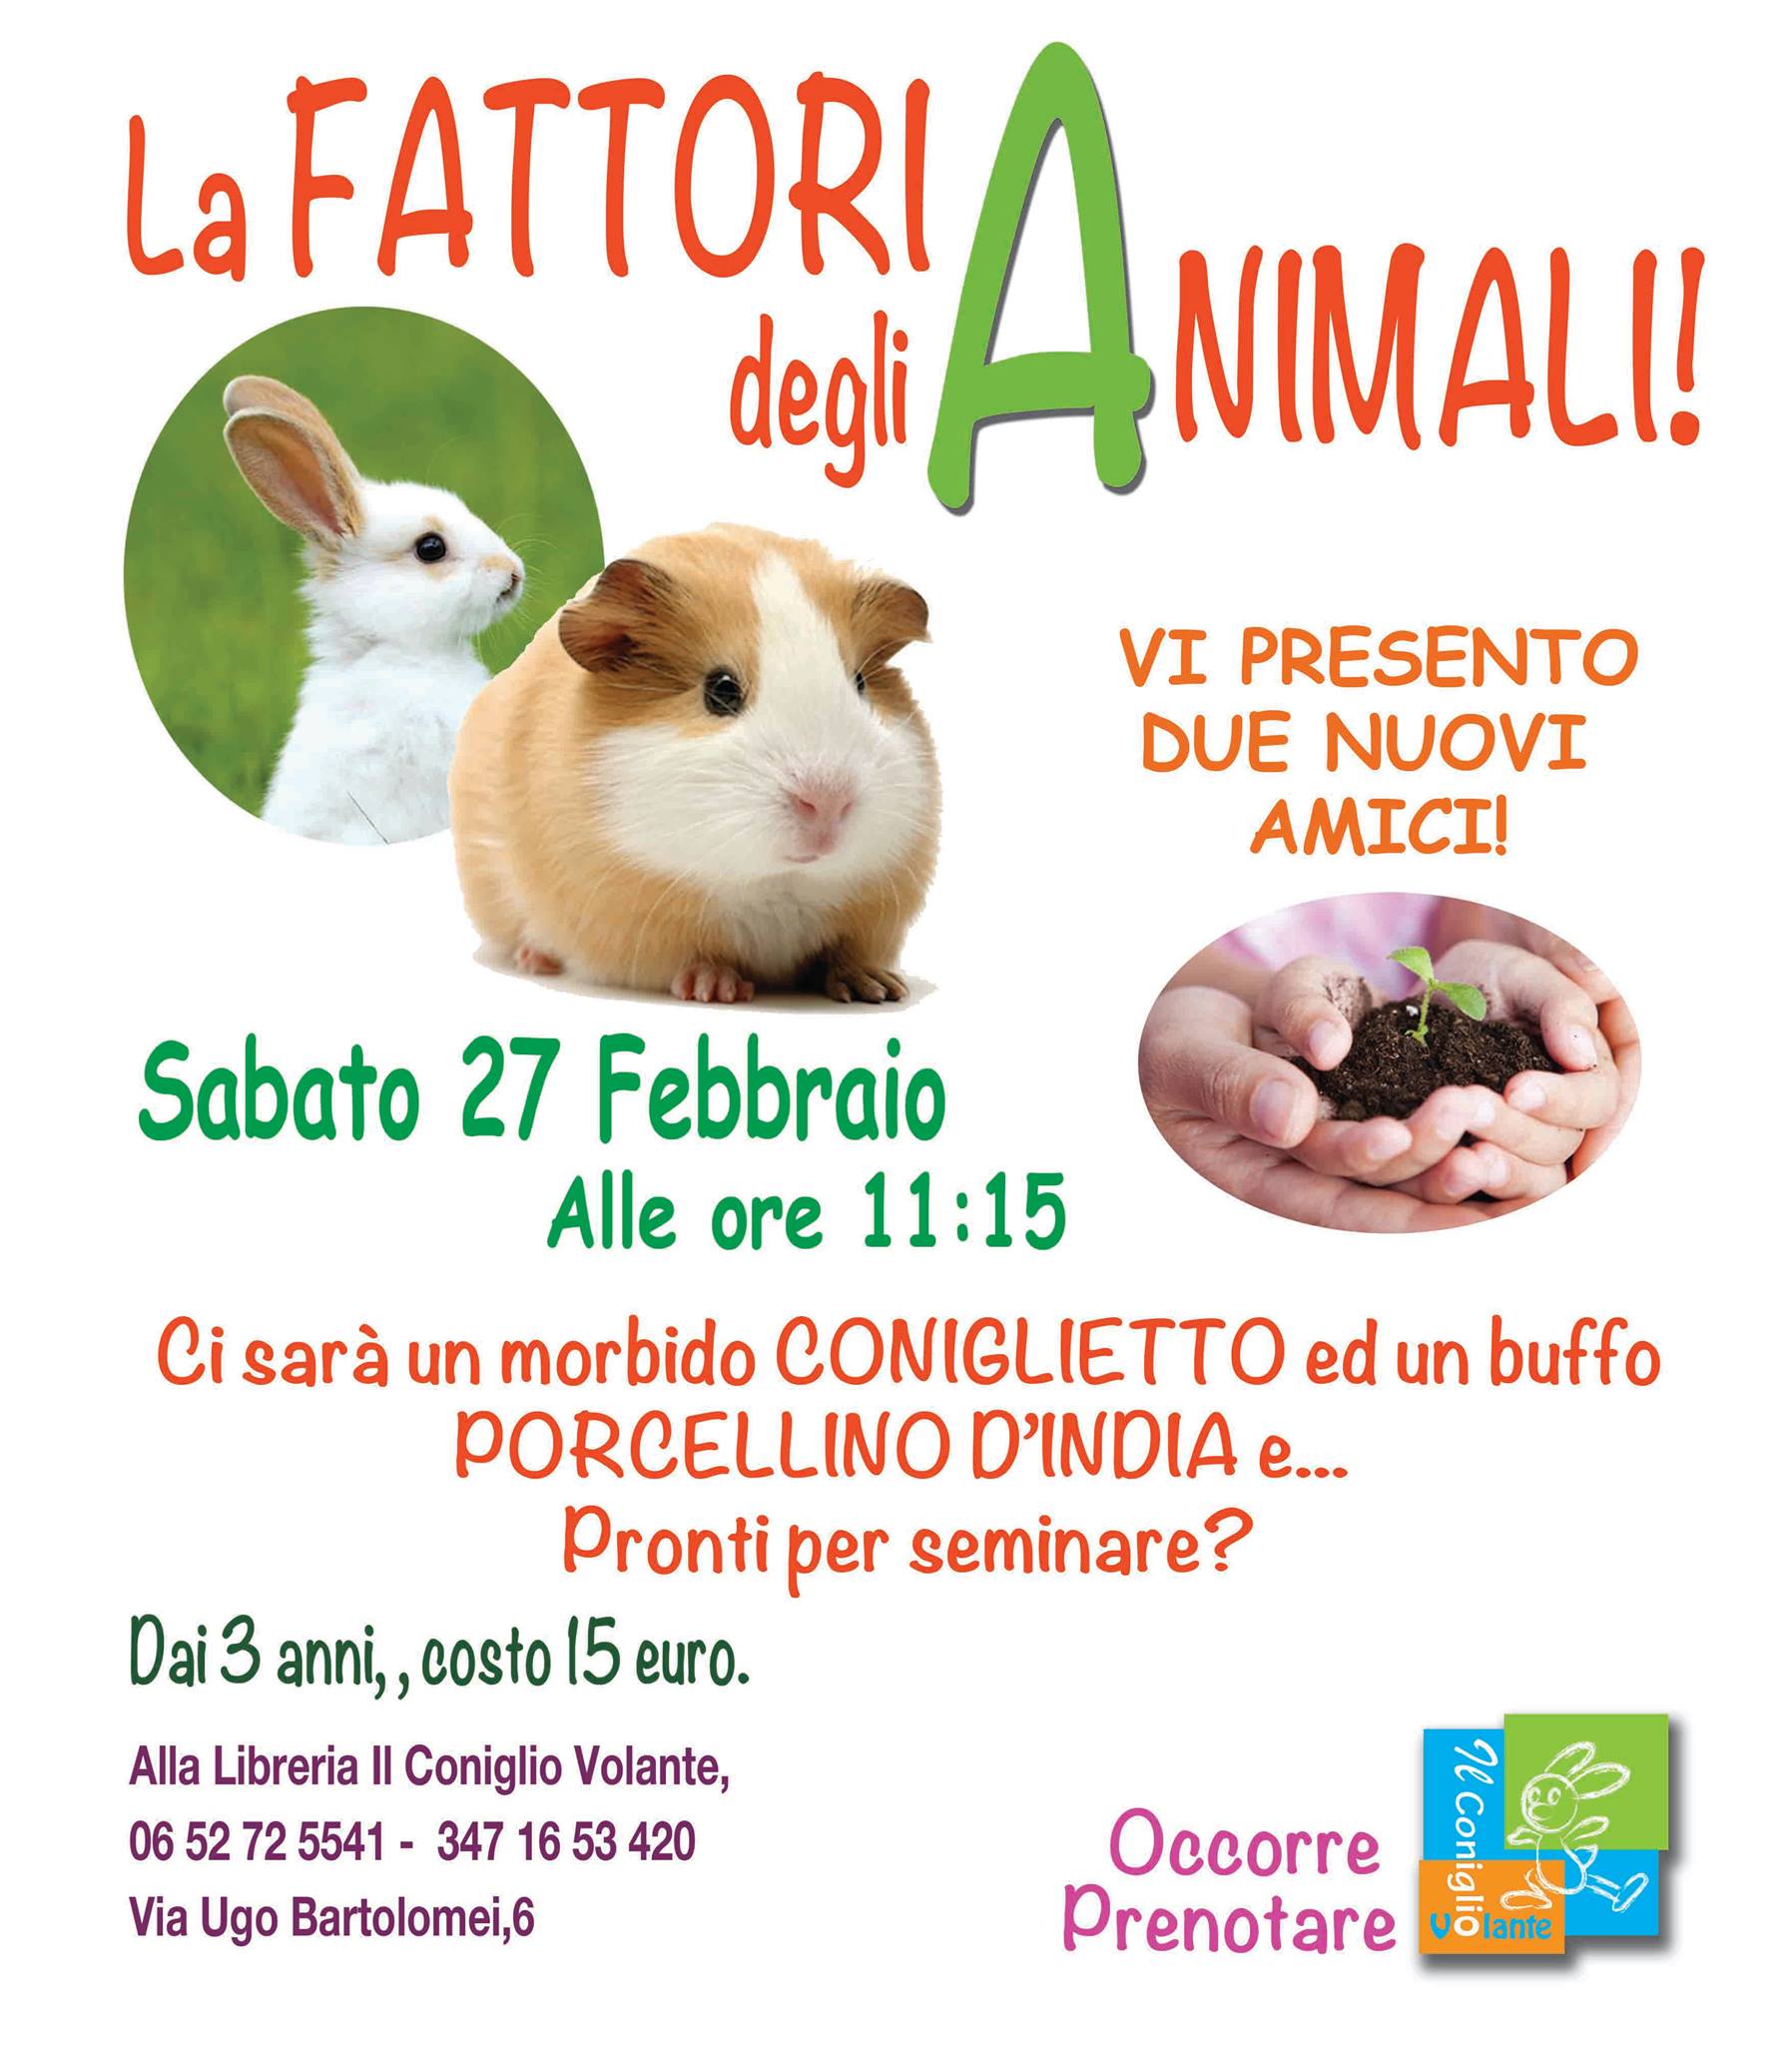 laboratorio per bambini libreria weekend sabato roma fattoria didattica animali balduina